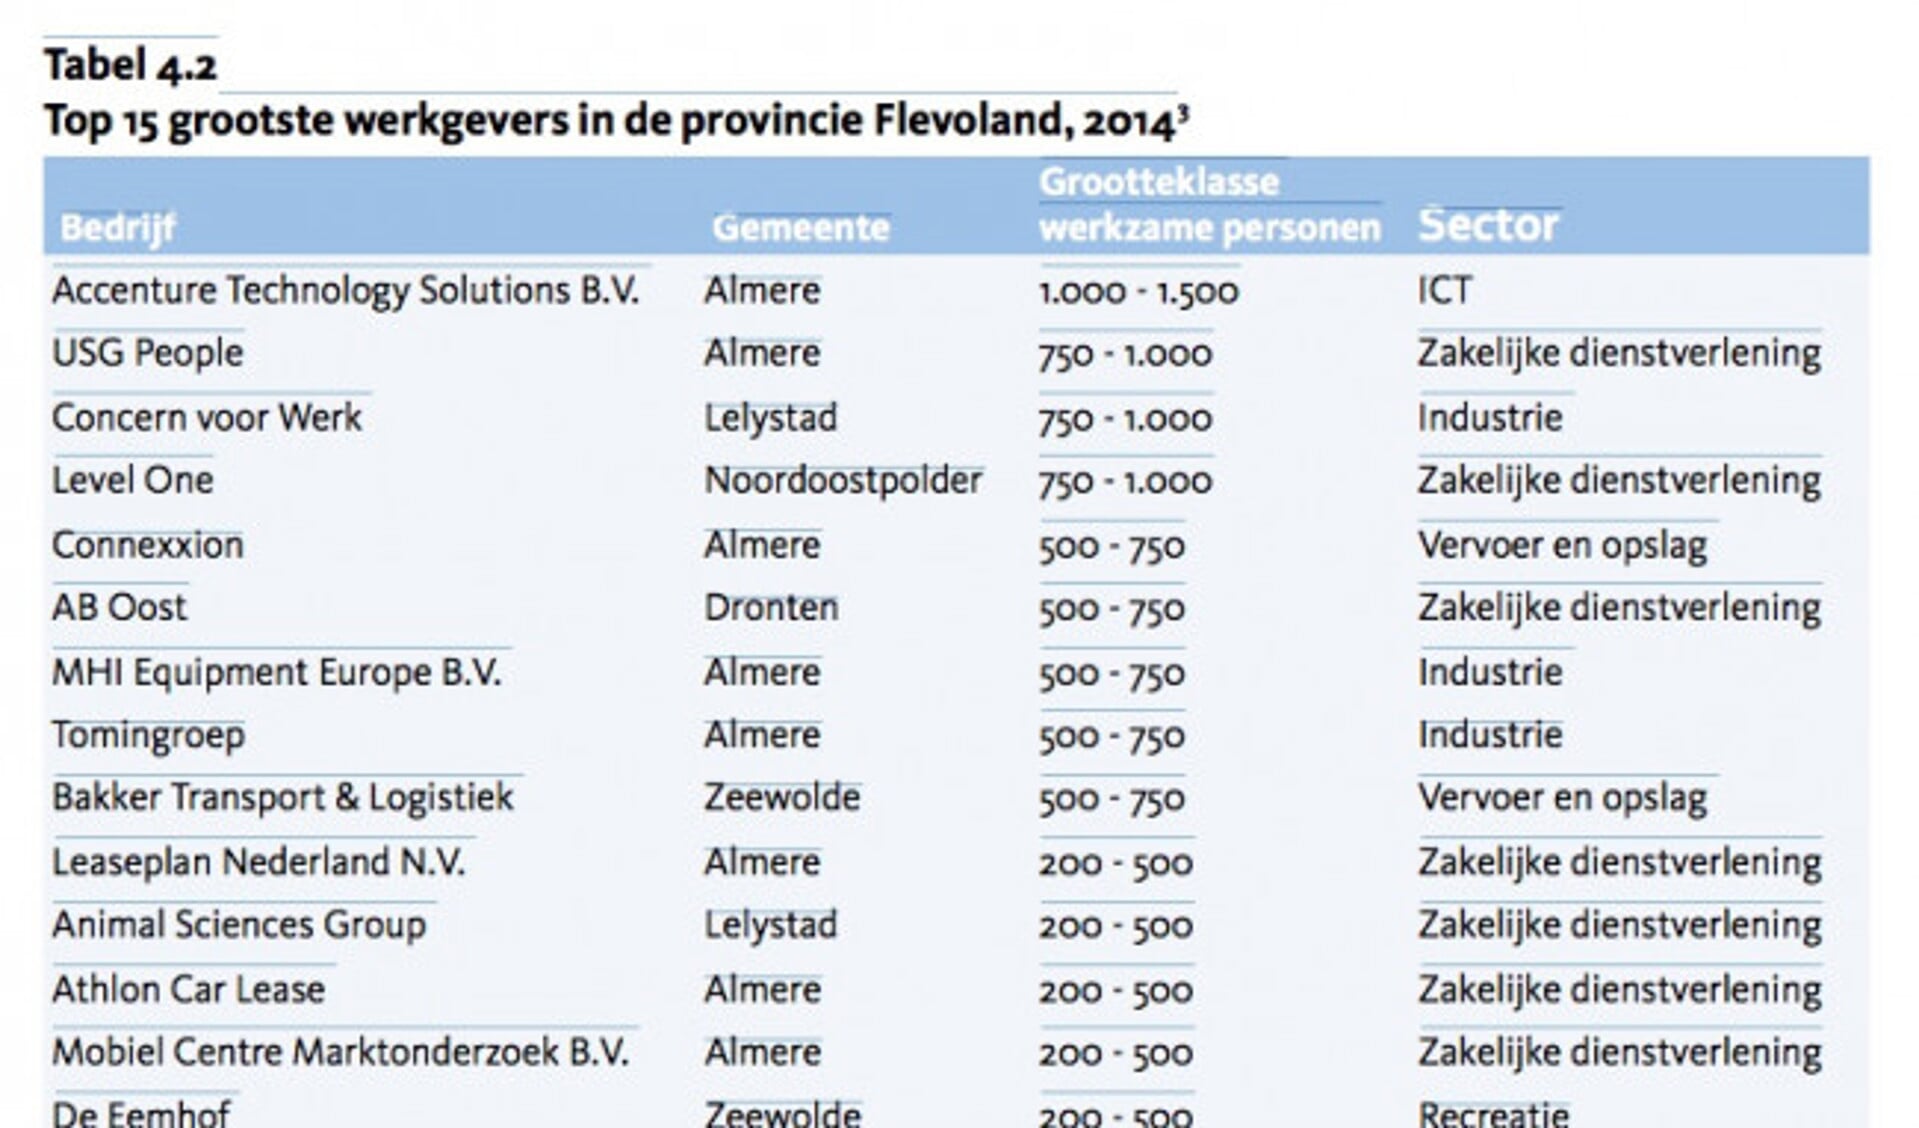 Dronten met één bedrijf in Top 15 van grootste werkgevers: AB Oost